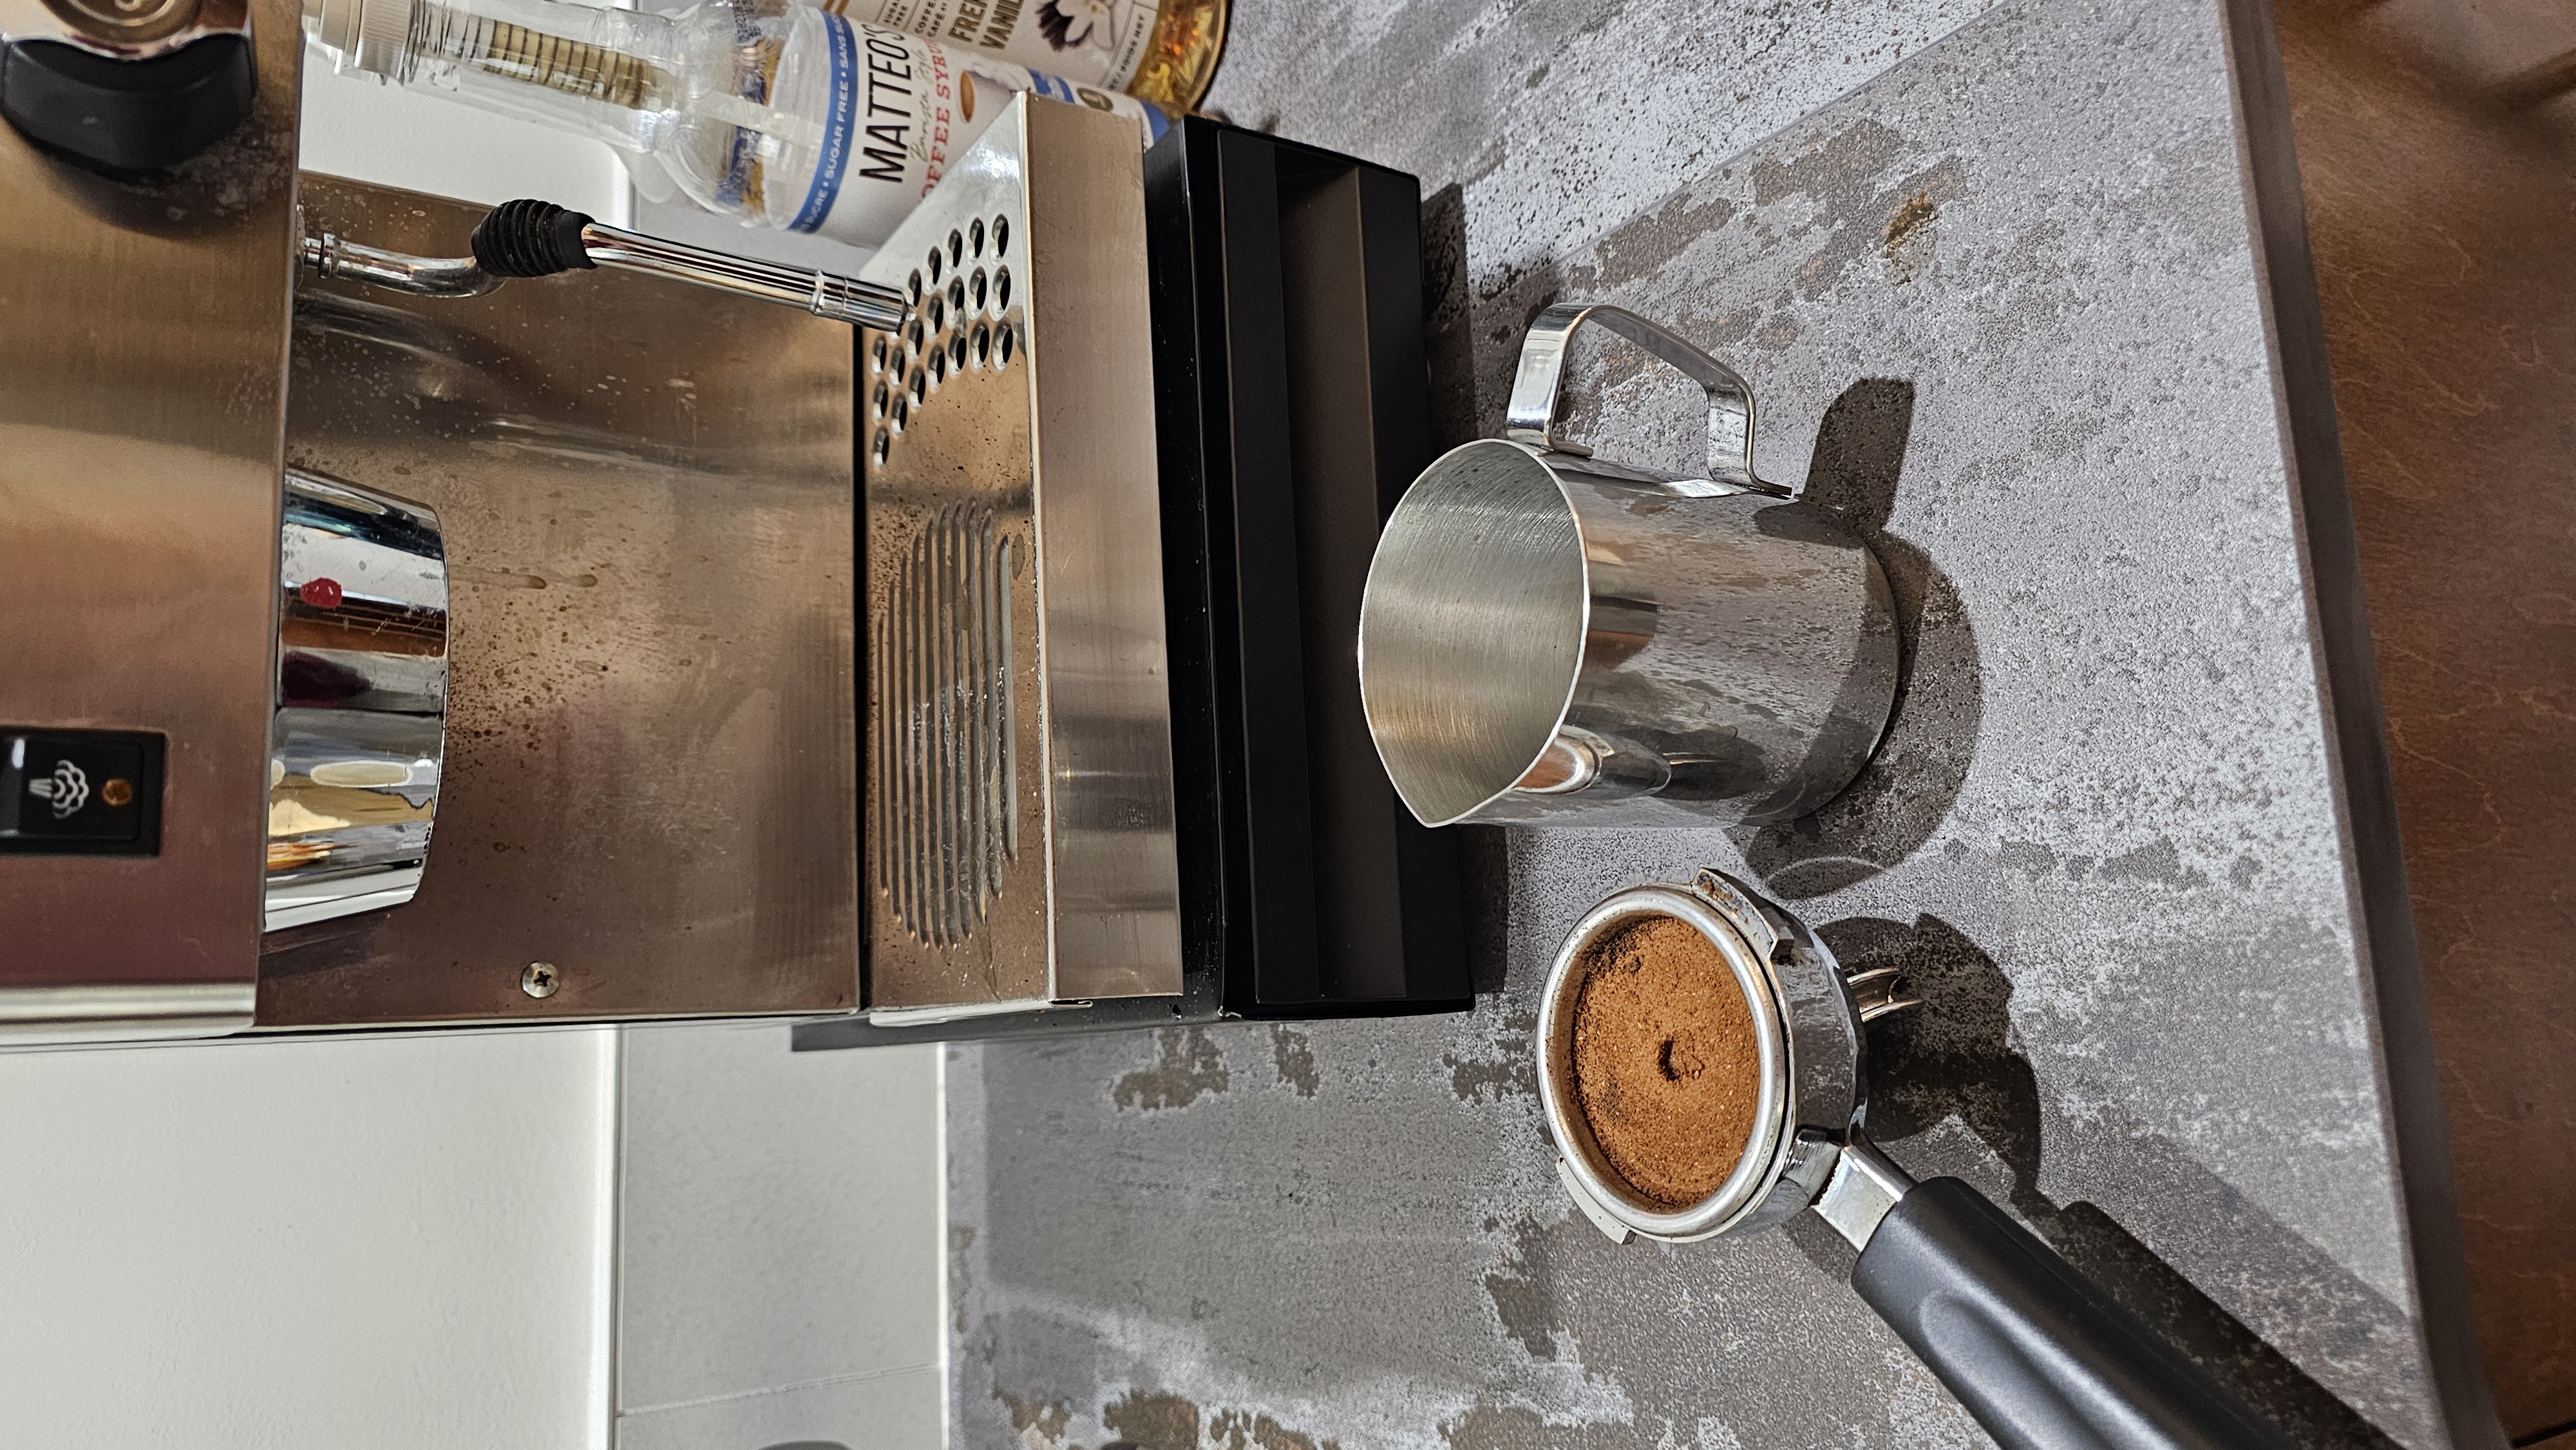 Espresso machine and coffee